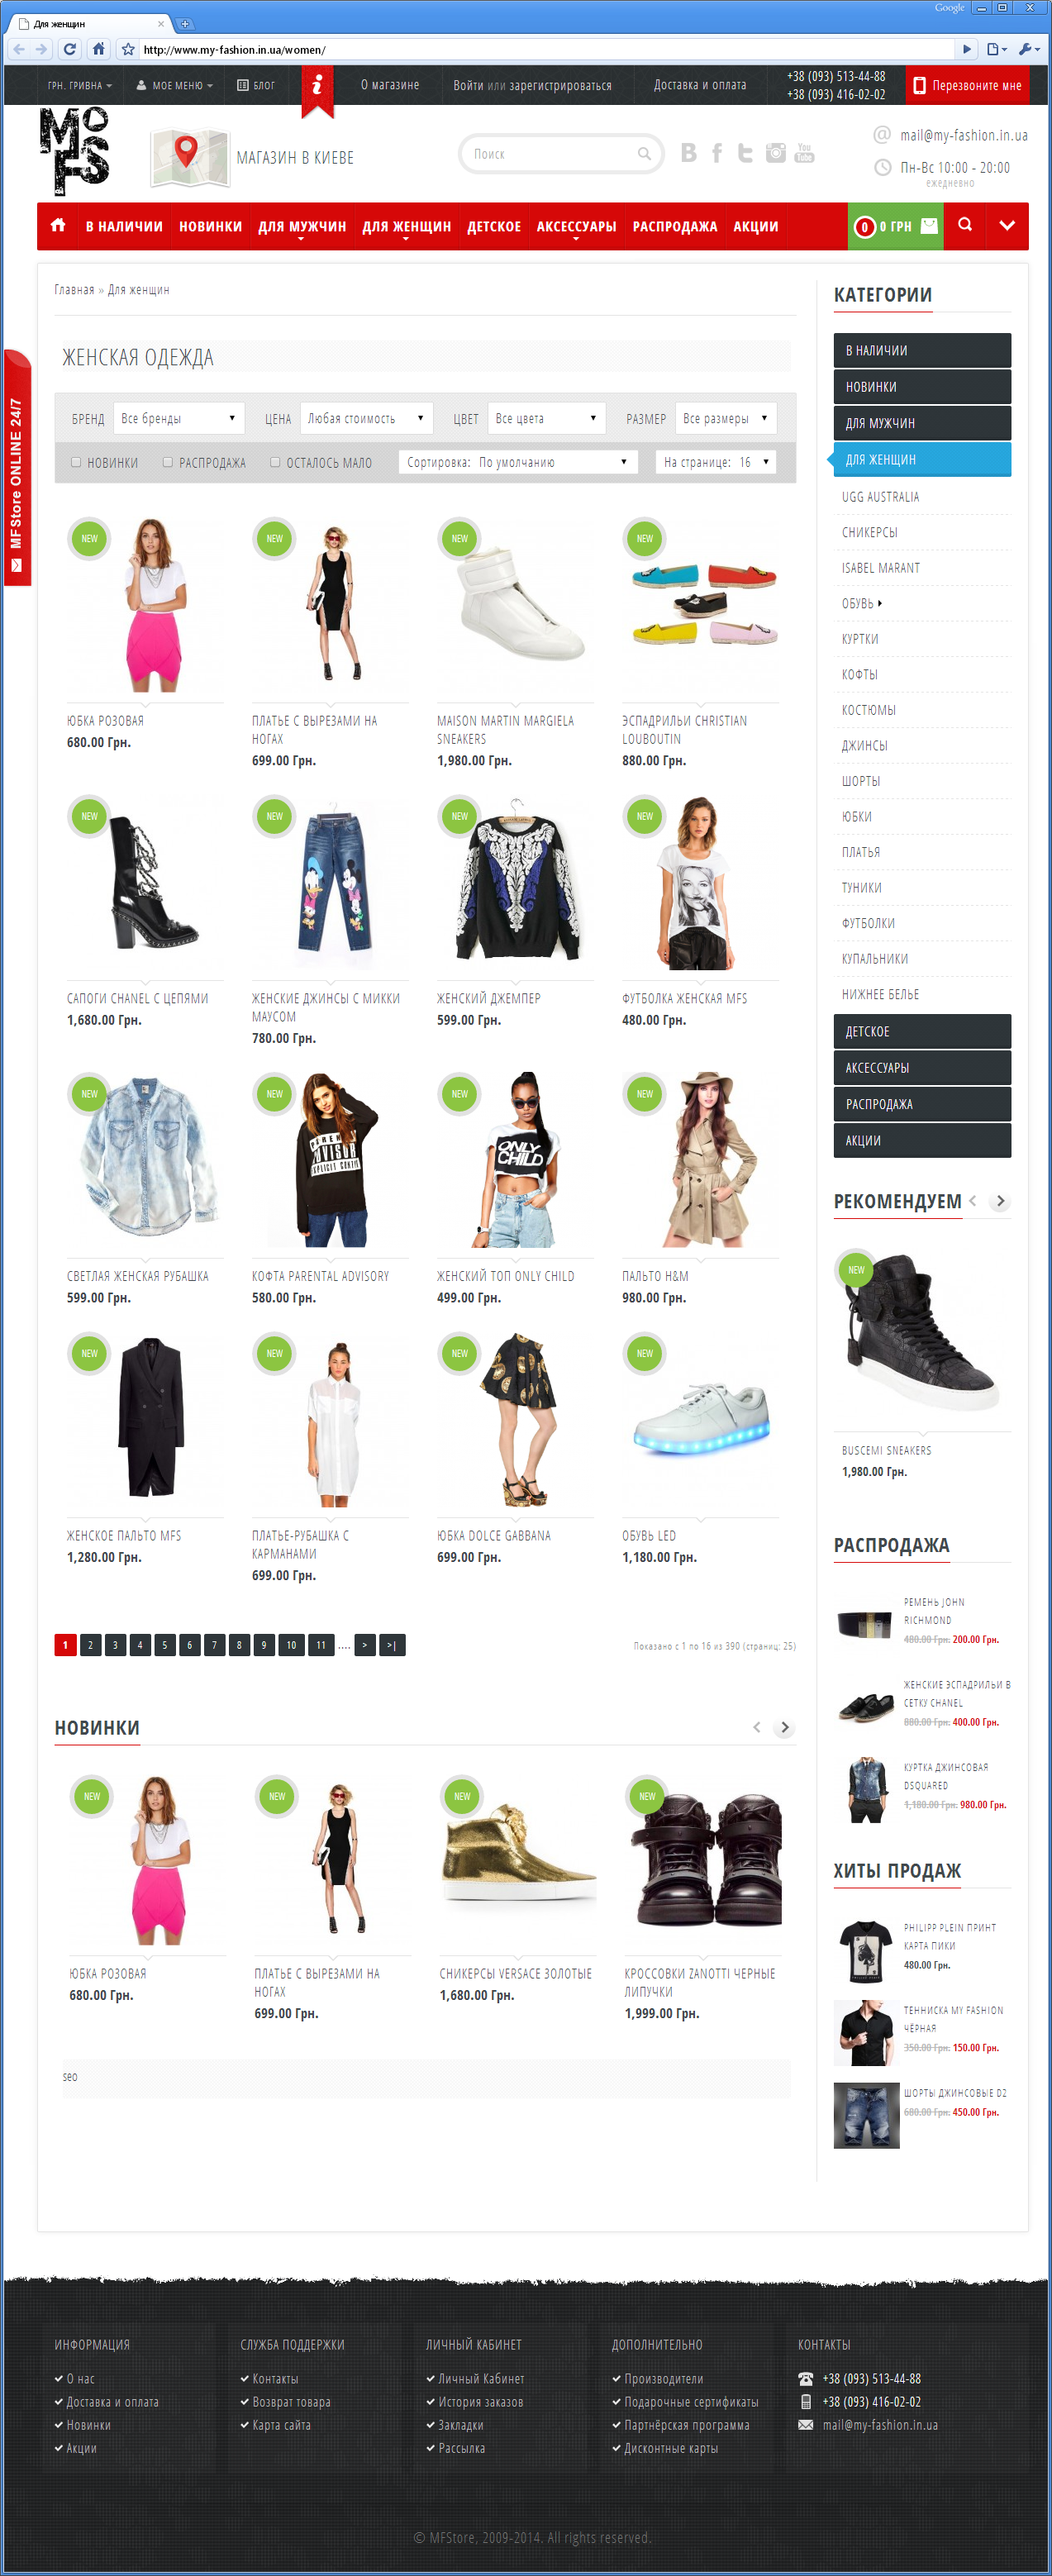 Редизайн інтернет-магазину елітного молодіжного одягу | проекти Evergreen 12